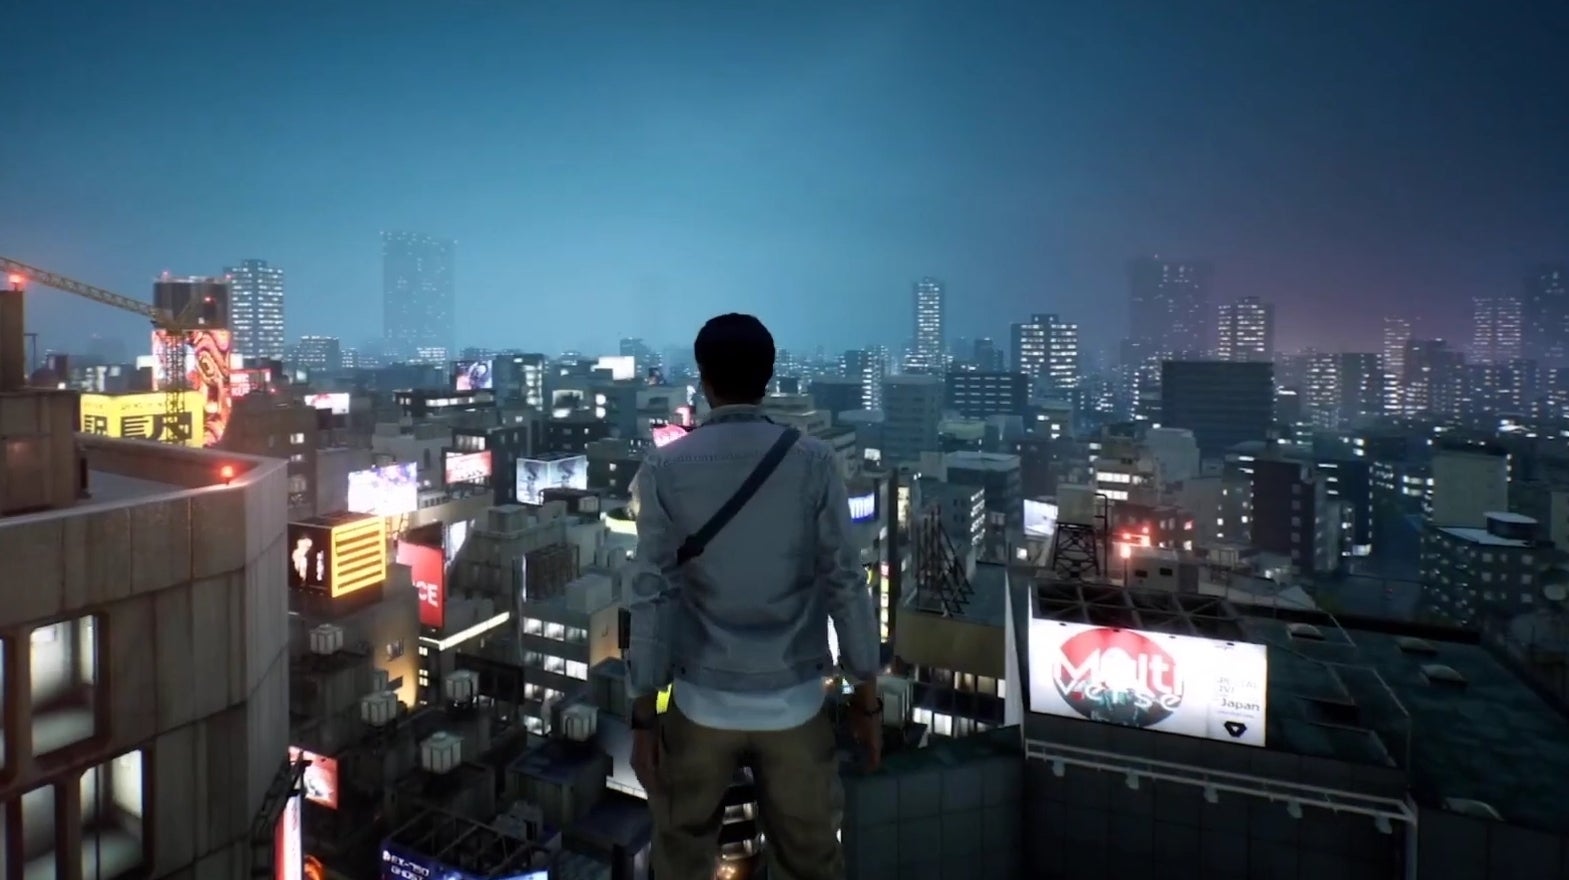 Bilder zu Ghostwire: Tokyo - Erstes Gameplay-Video und Release-Termin für PS5 enthüllt